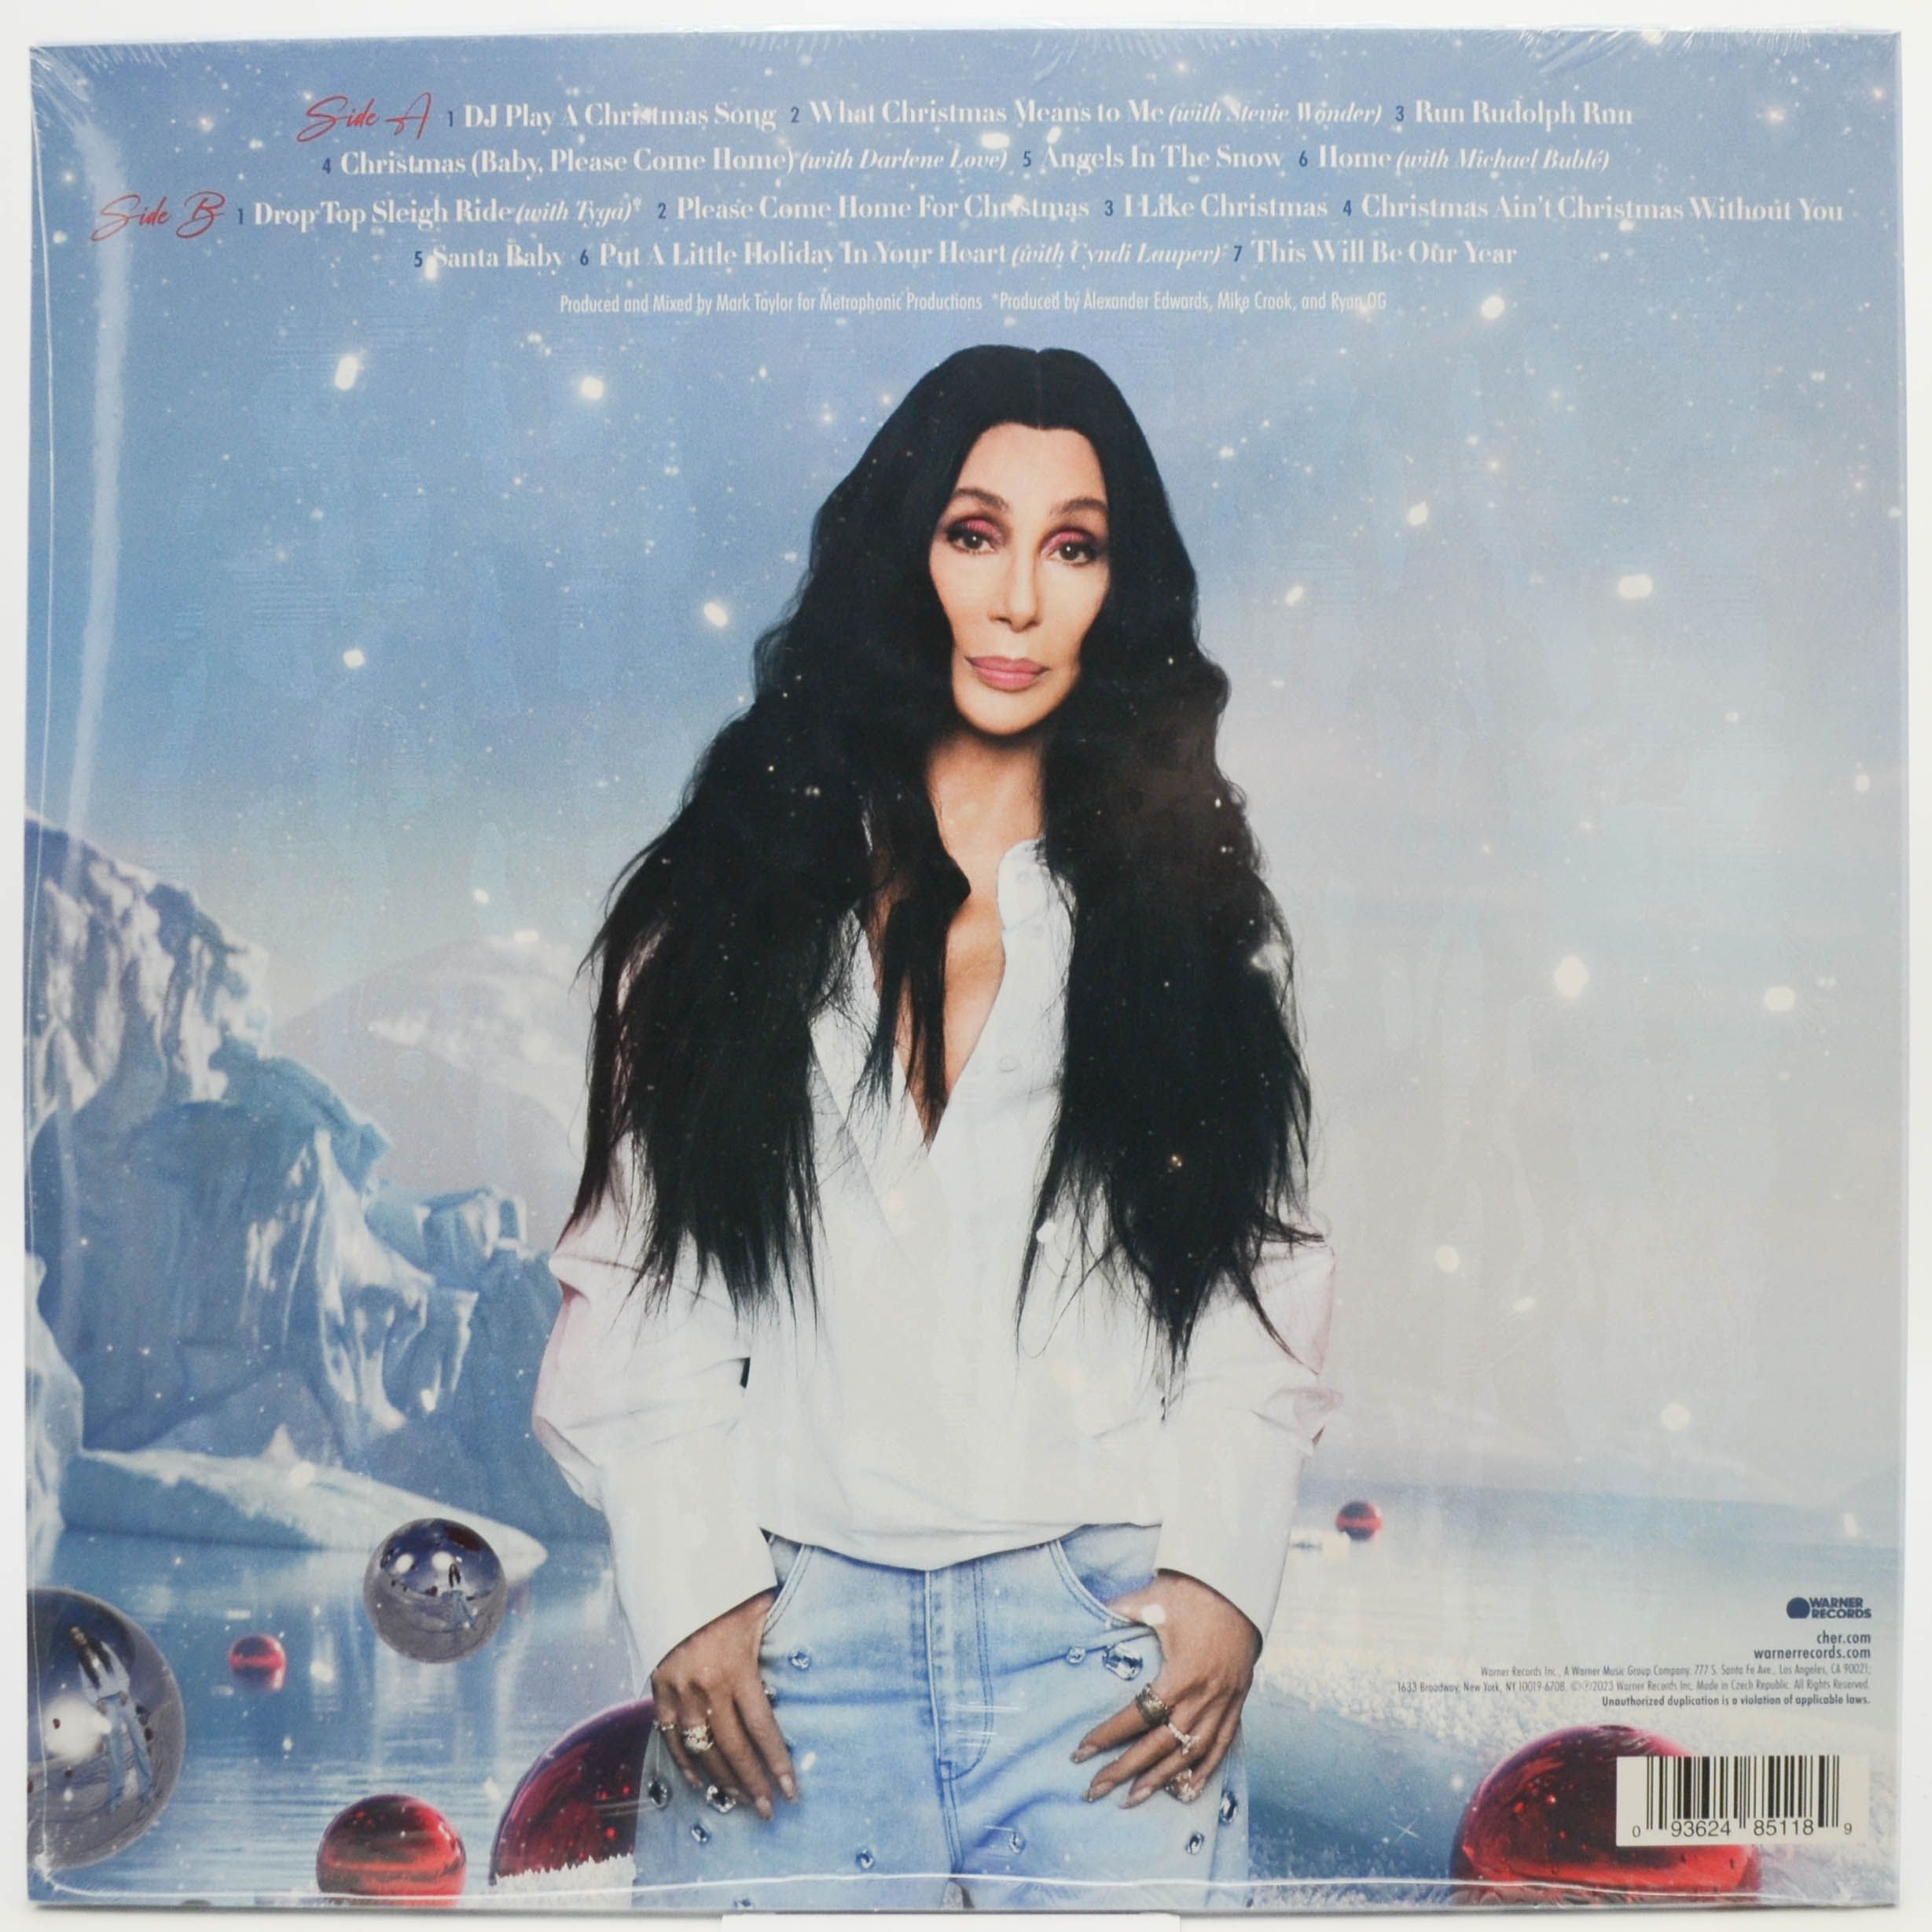 Cher — Christmas, 2023